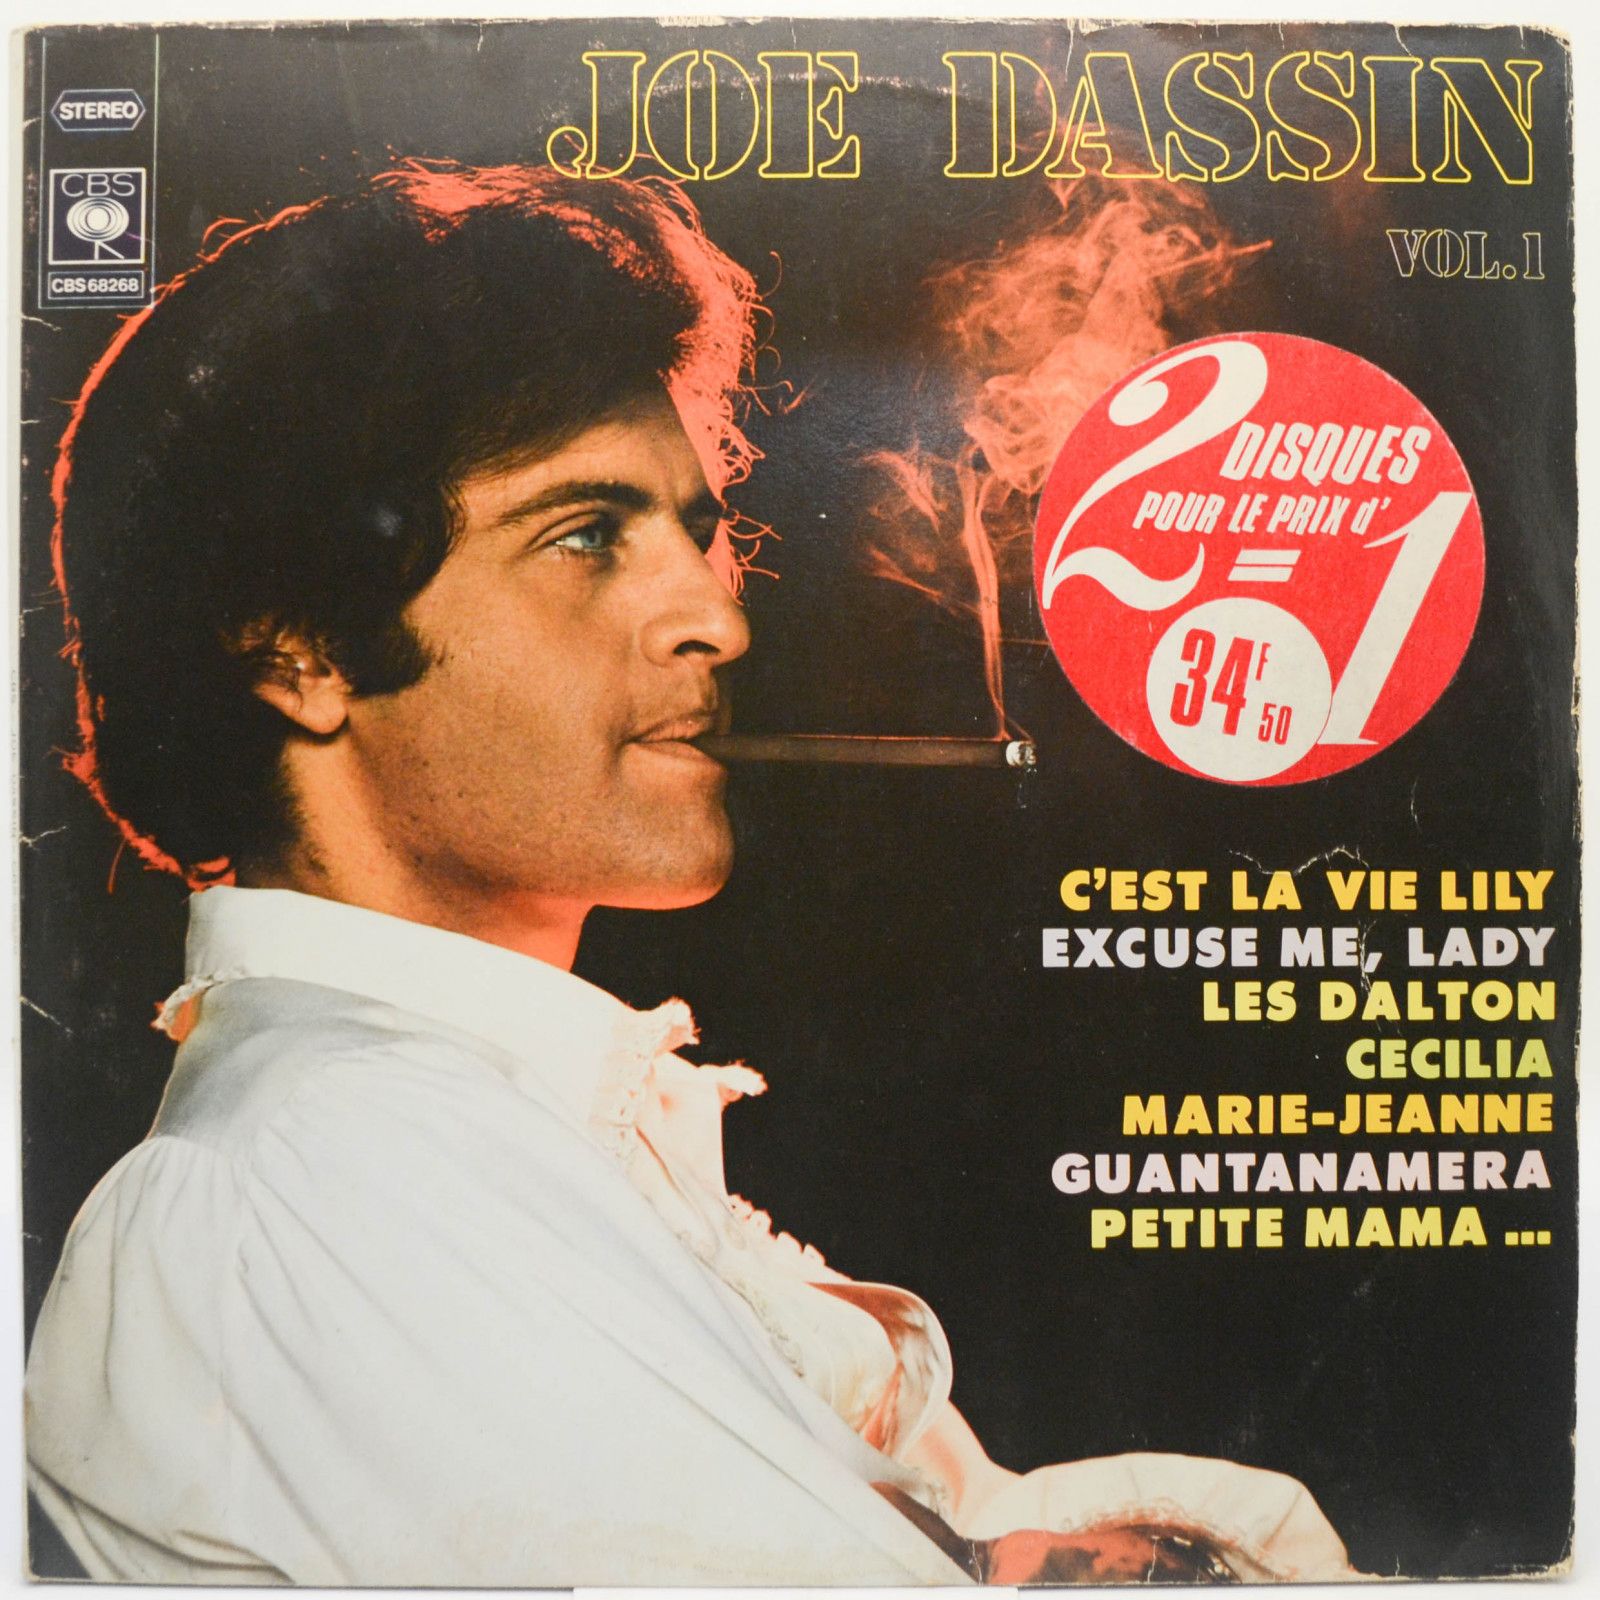 Joe Dassin — Vol. 1 & Vol. 2 (2LP, France), 1973